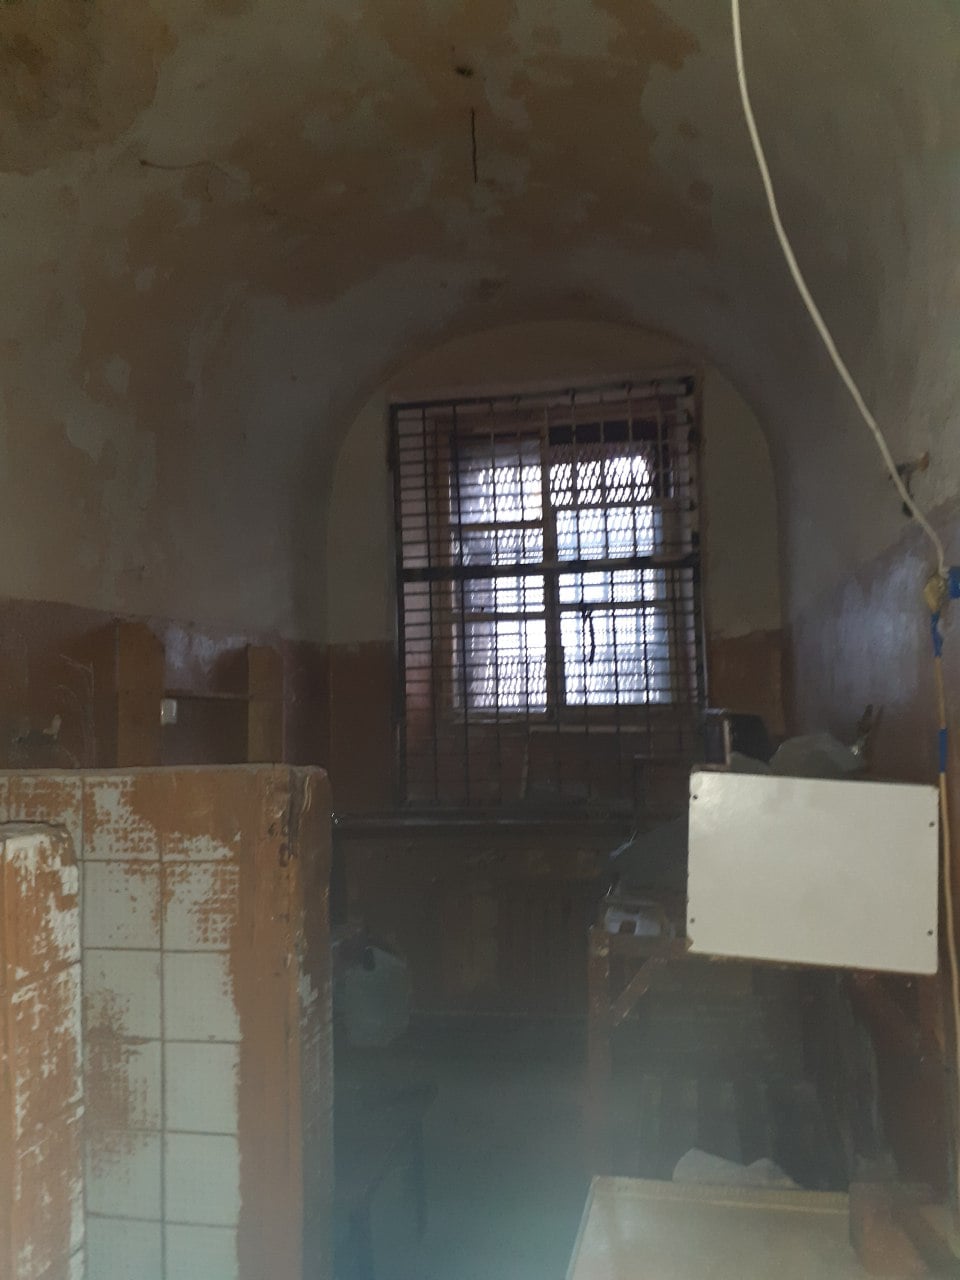 Нет спальных мест и грибок на стенах. Омбудсмен выявила нарушения в киевском СИЗО: фото 